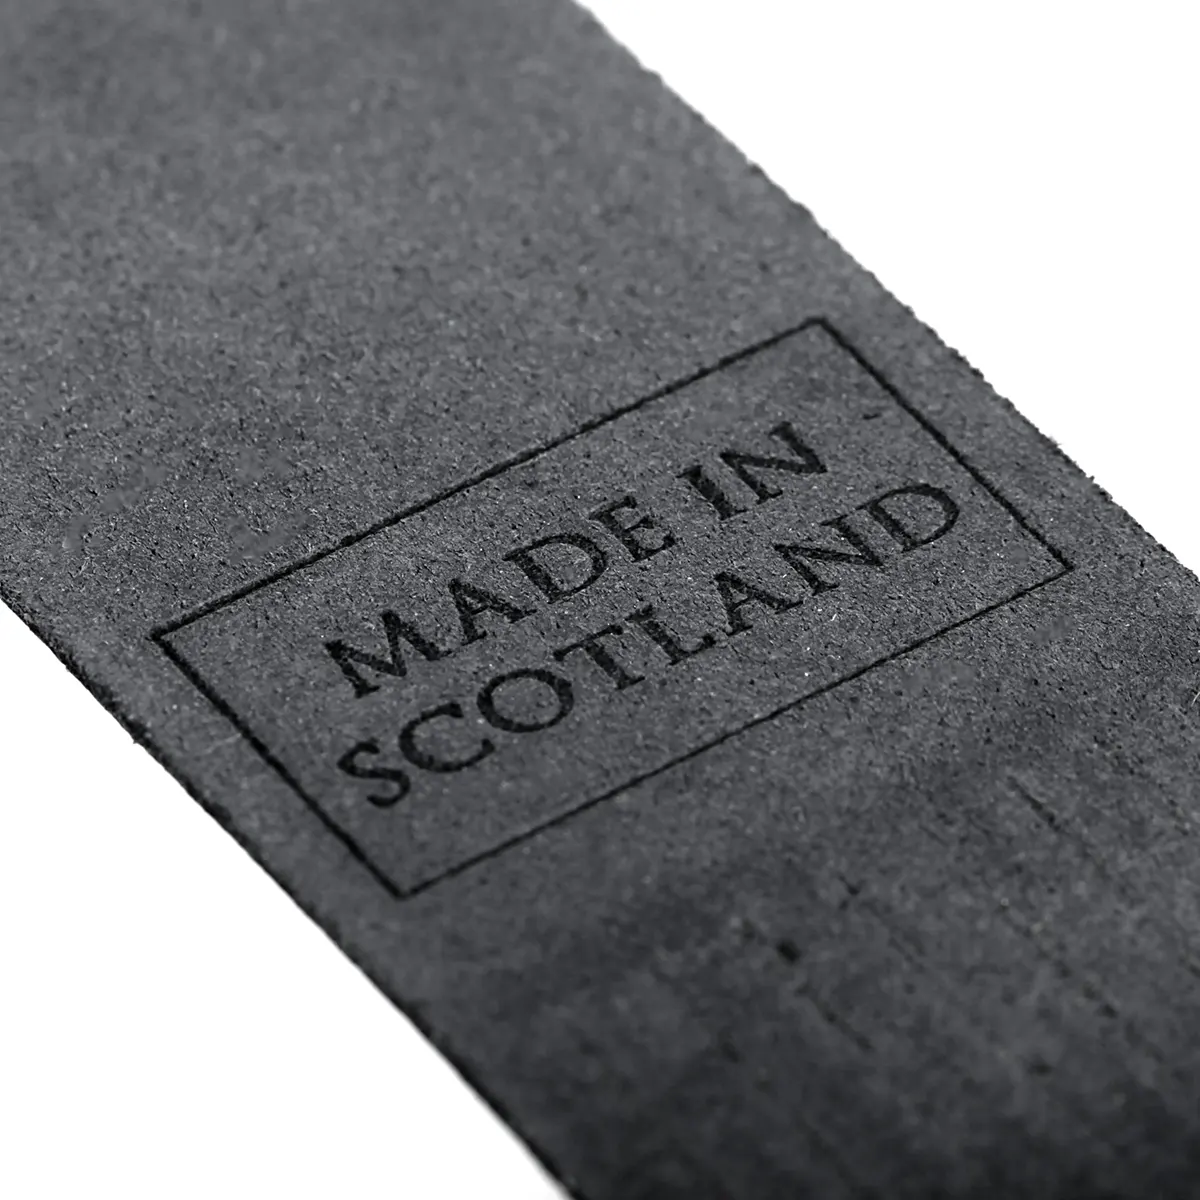 Lewis and Harris - Lesezeichen aus Leder in Schwarz - Made in Scotland